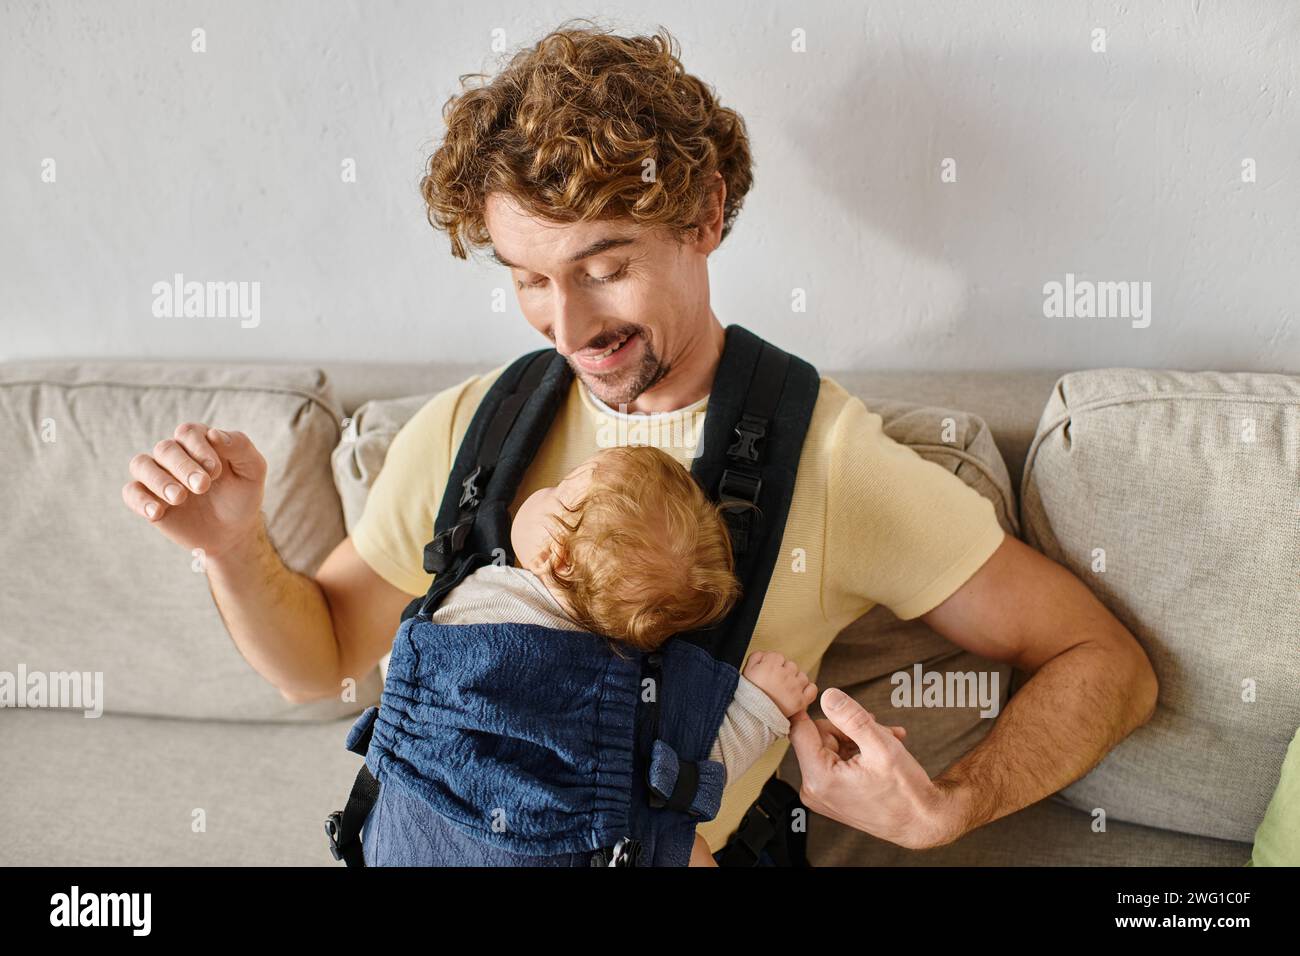 Fröhlicher Mann mit lockigen Haaren, der seinen kleinen Sohn in Babytrage, Vaterschaft und Liebe ansieht Stockfoto